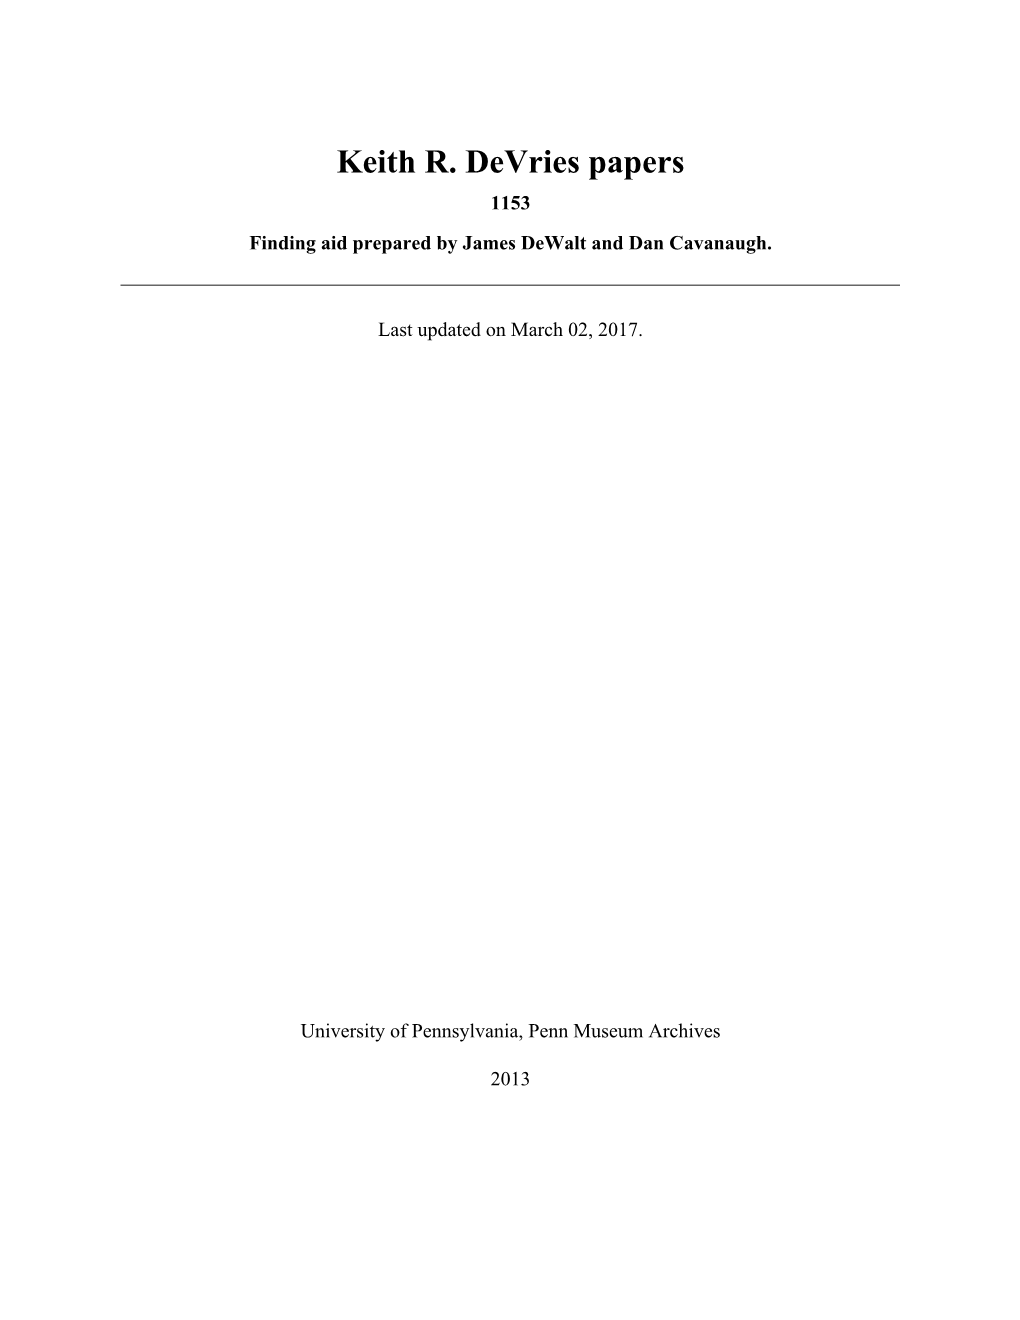 Keith R. Devries Papers 1153 Finding Aid Prepared by James Dewalt and Dan Cavanaugh